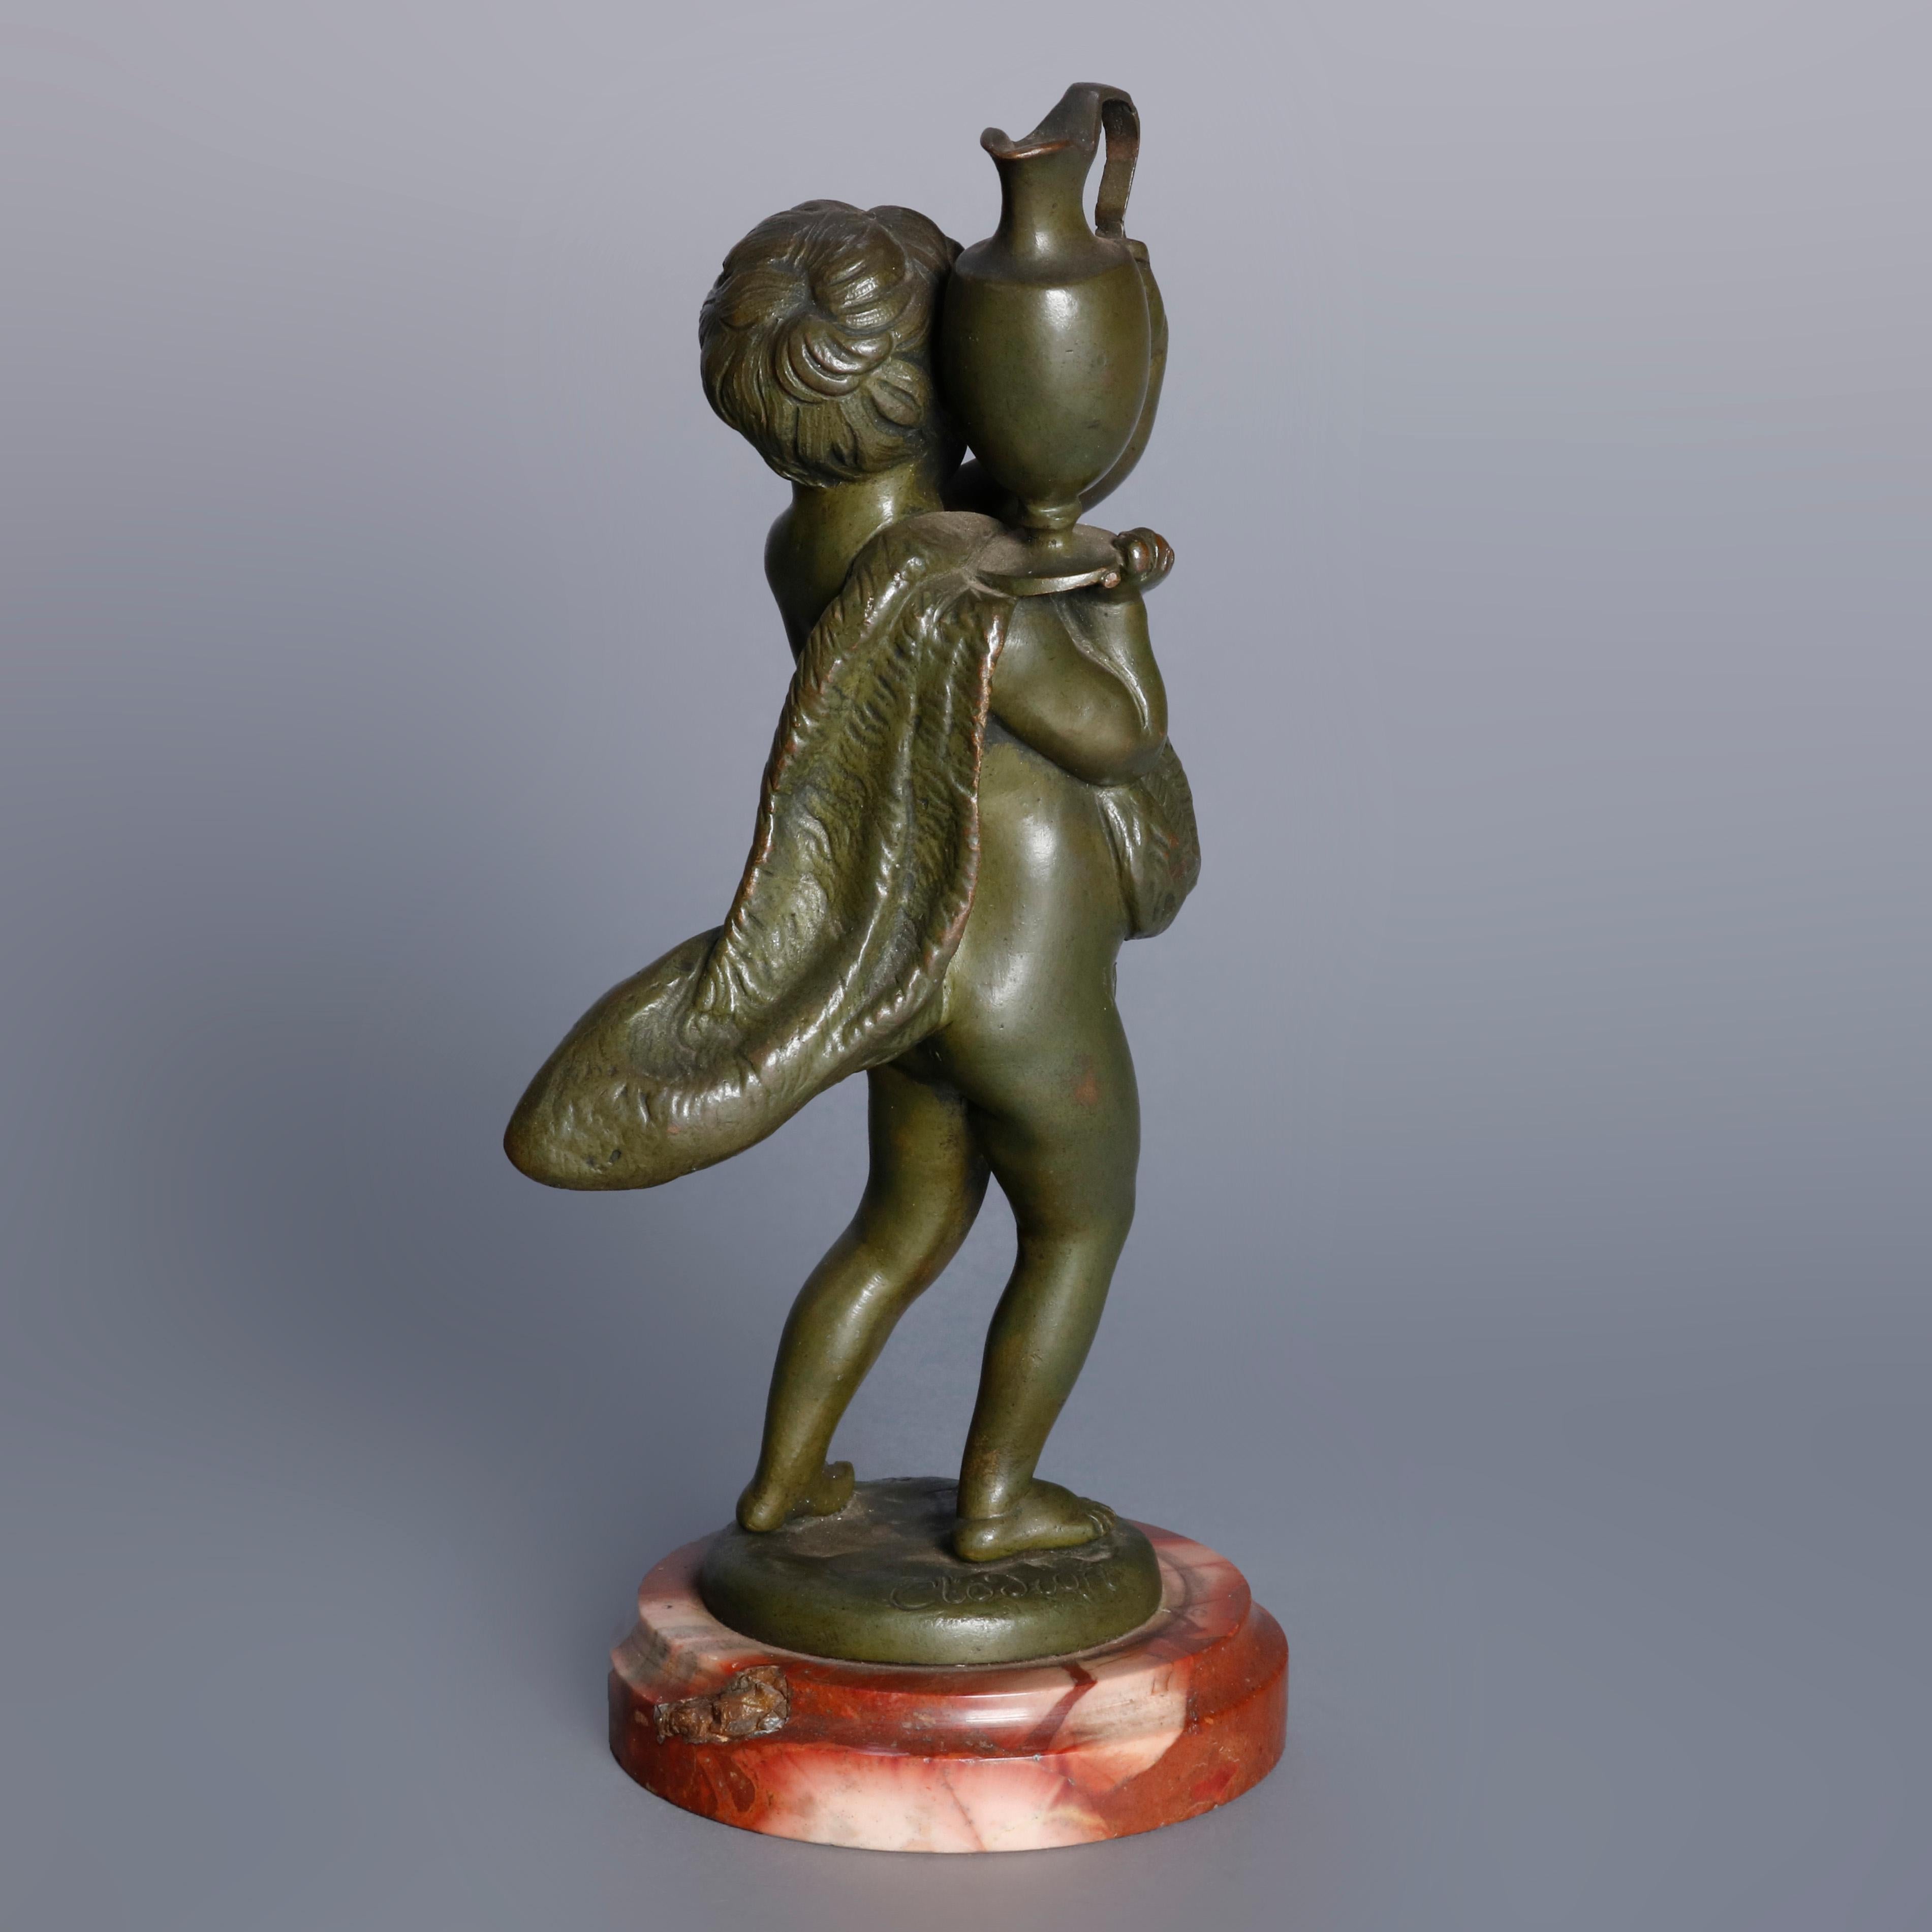 Cast Antique French Figural Classical Cherub Bronze Sculpture, circa 1890